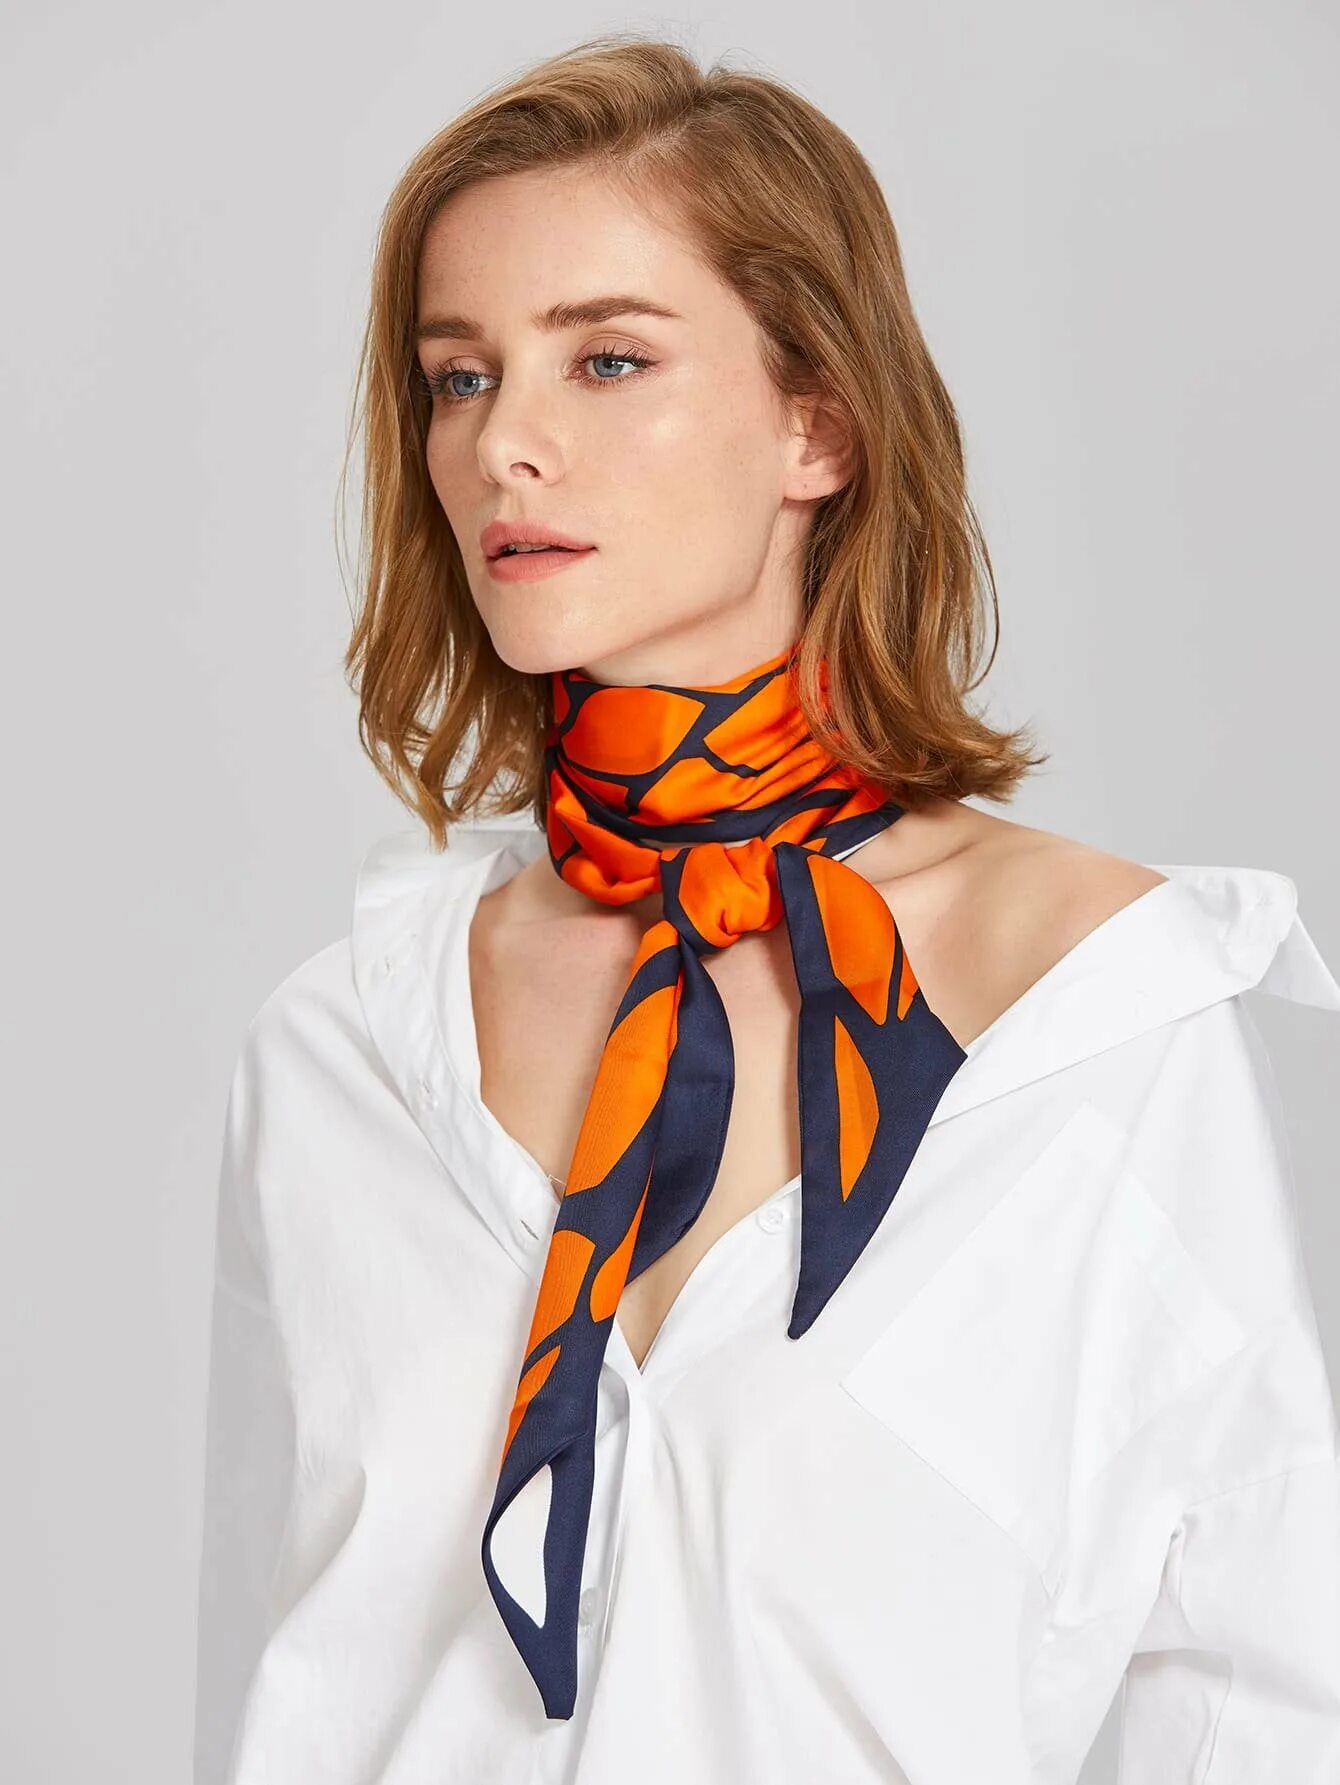 Как завязывать шелковый шарф на шею